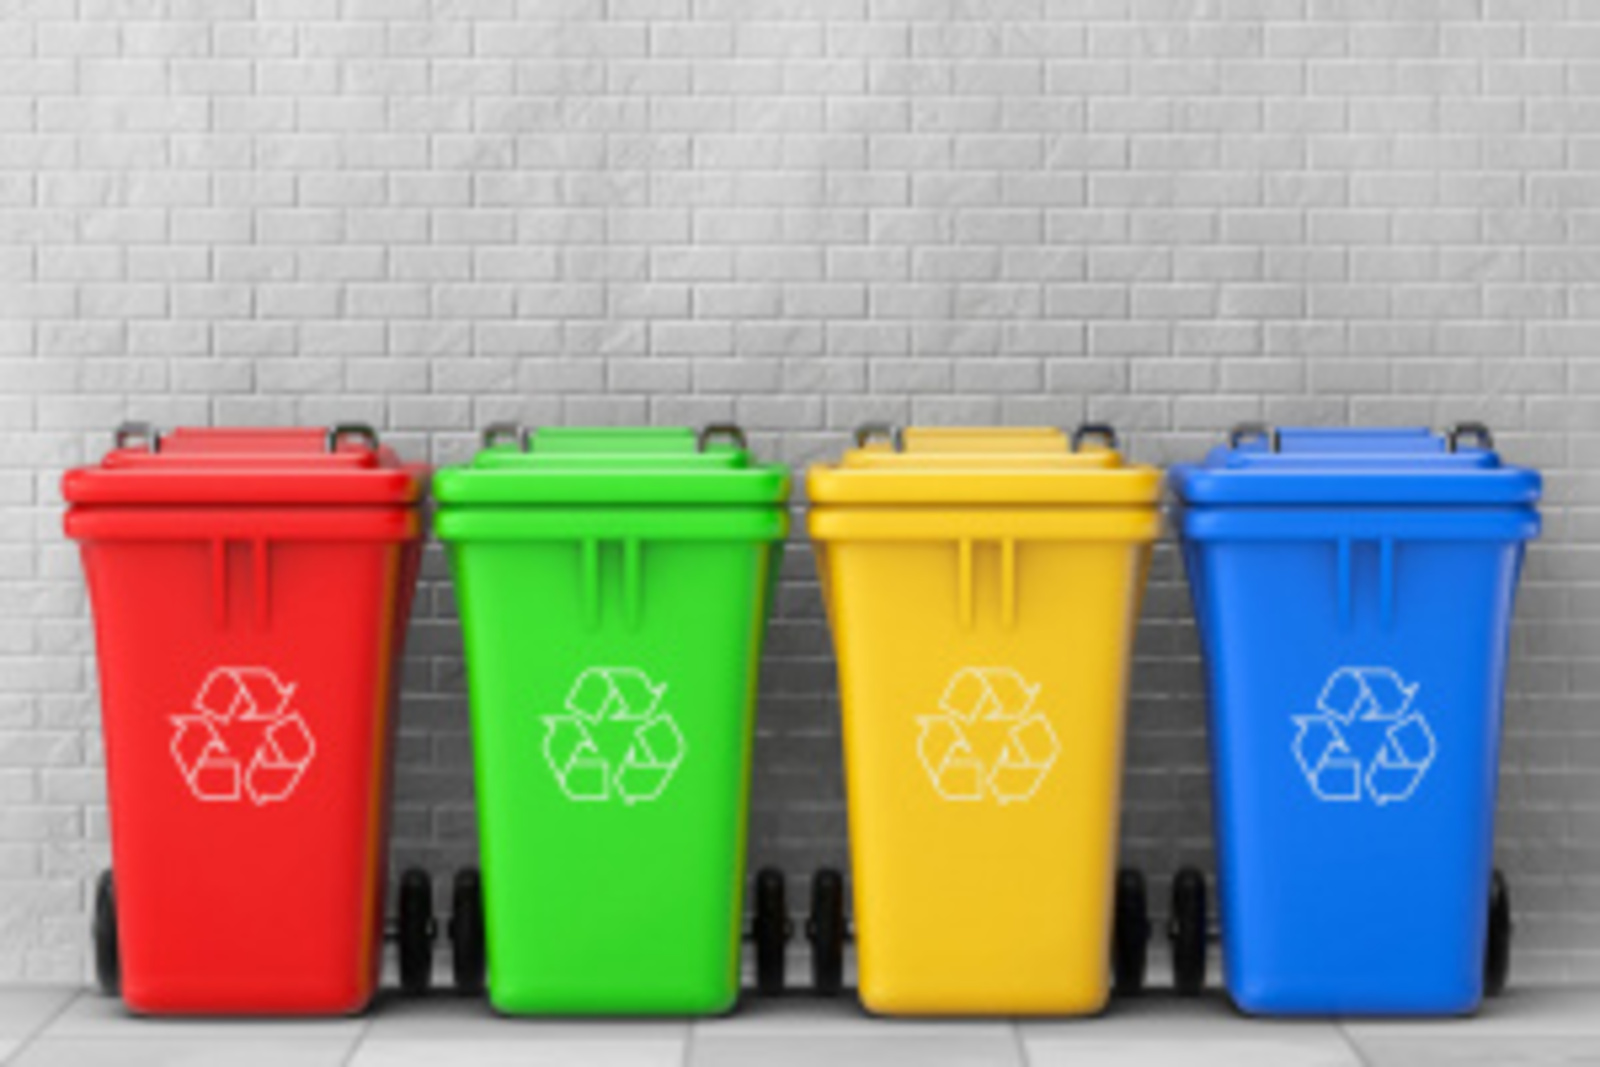 Башкортостан получит субсидию на покупку контейнеров для раздельного сбора мусора